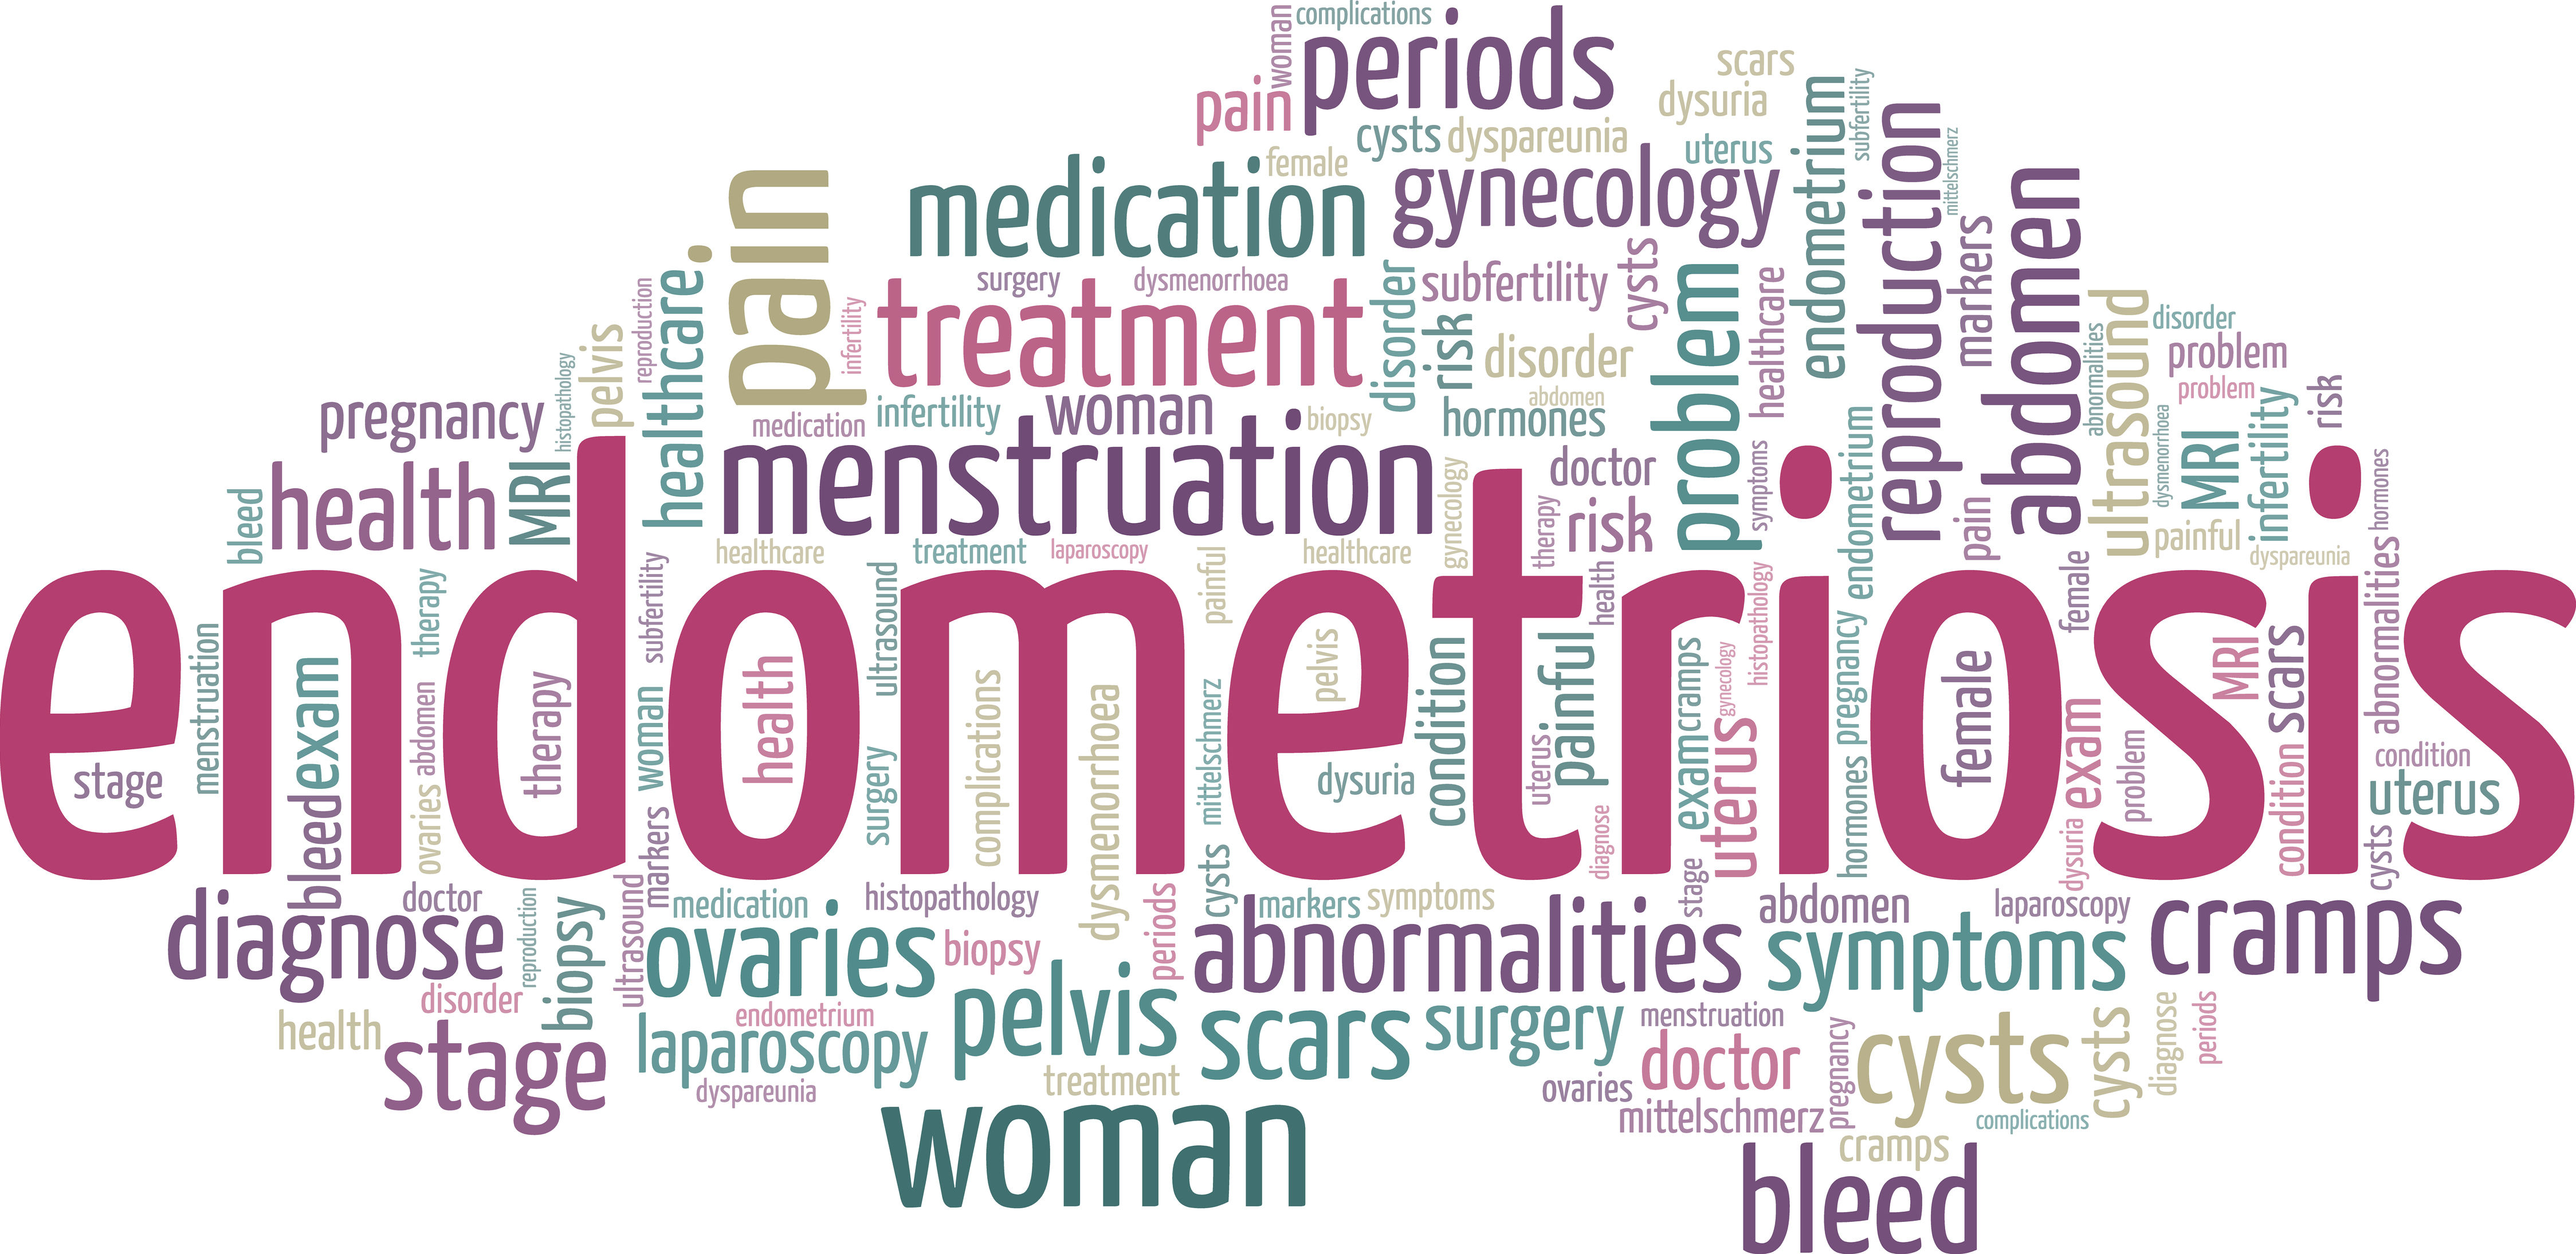 Endometriosis_words.jpg